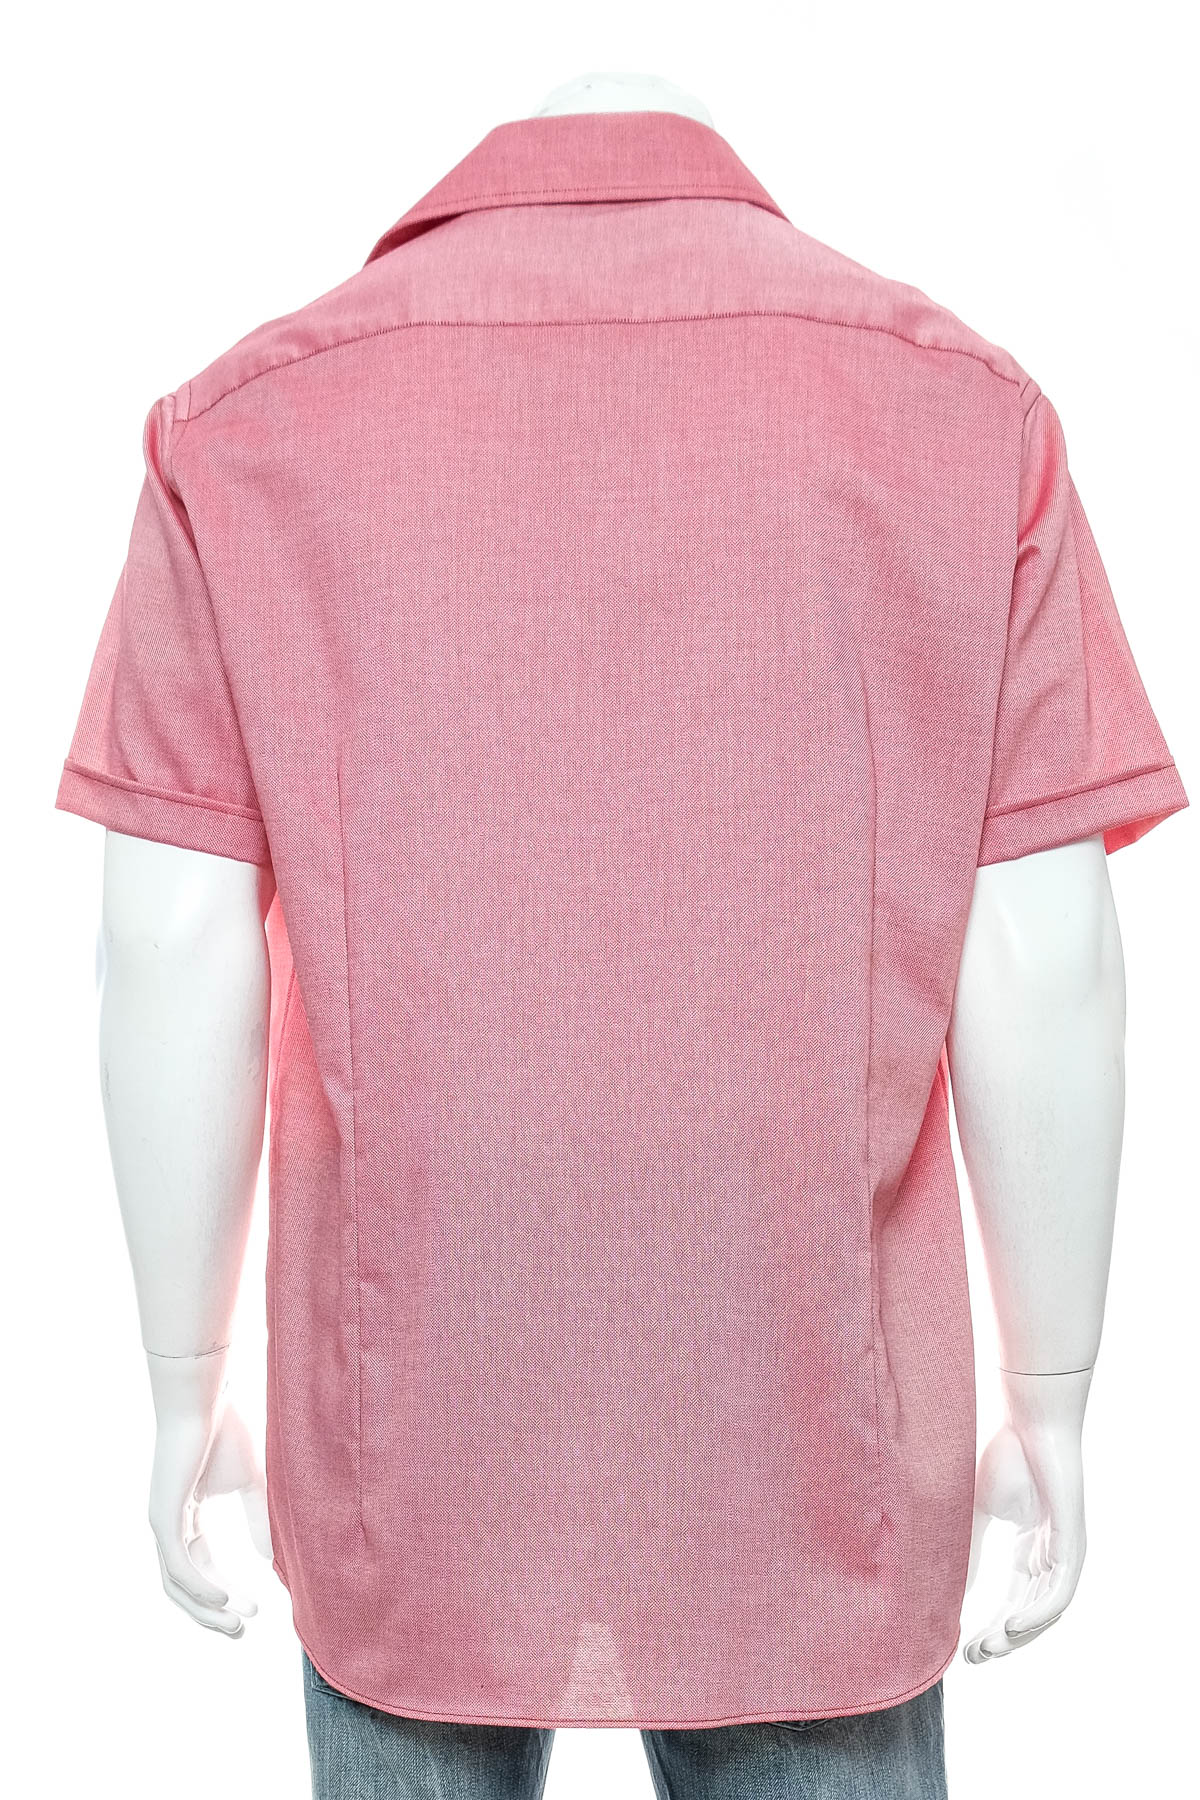 Ανδρικό πουκάμισο - Hatico - 1